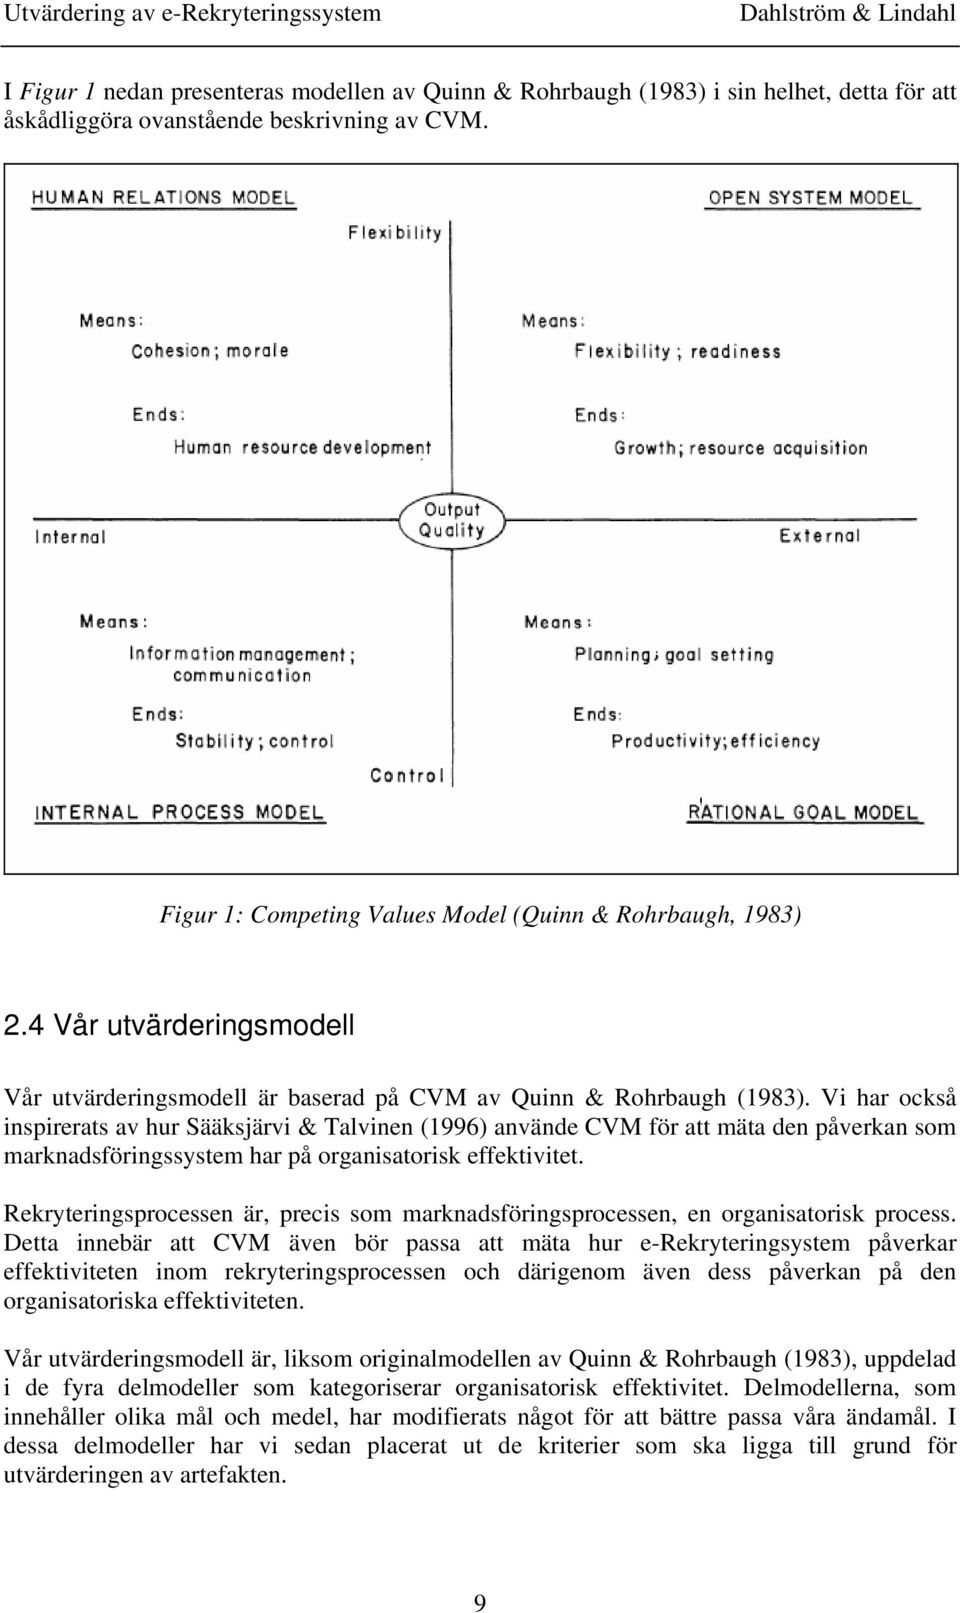 Vi har också inspirerats av hur Sääksjärvi & Talvinen (1996) använde CVM för att mäta den påverkan som marknadsföringssystem har på organisatorisk effektivitet.